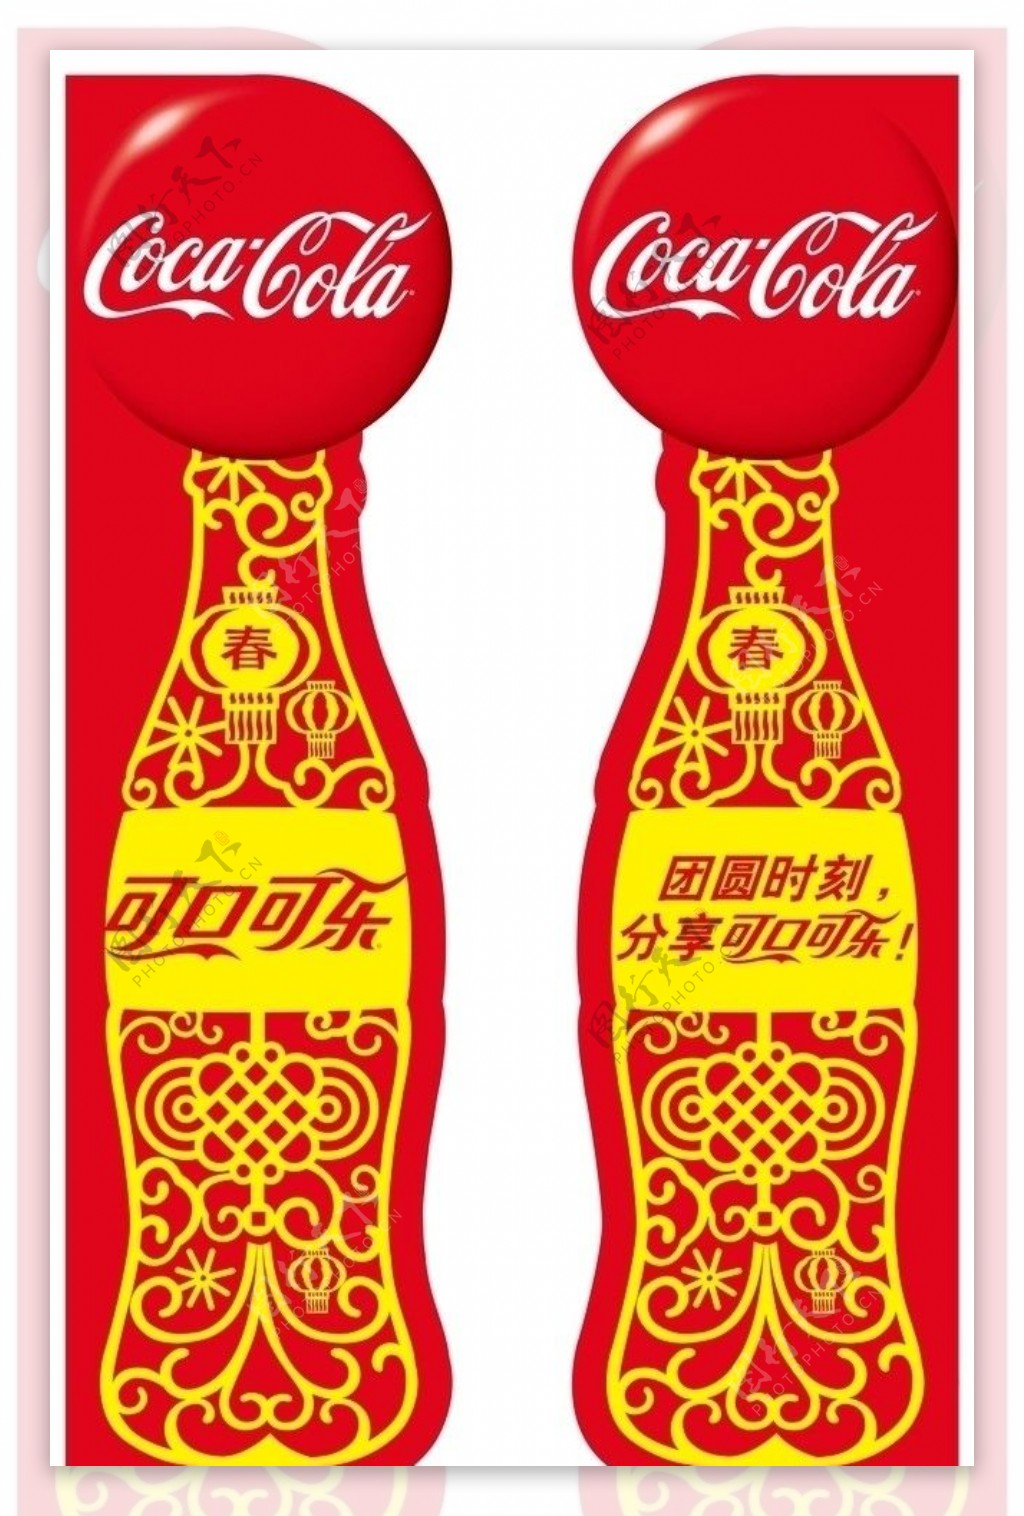 可口可乐春节CNY侧板设计